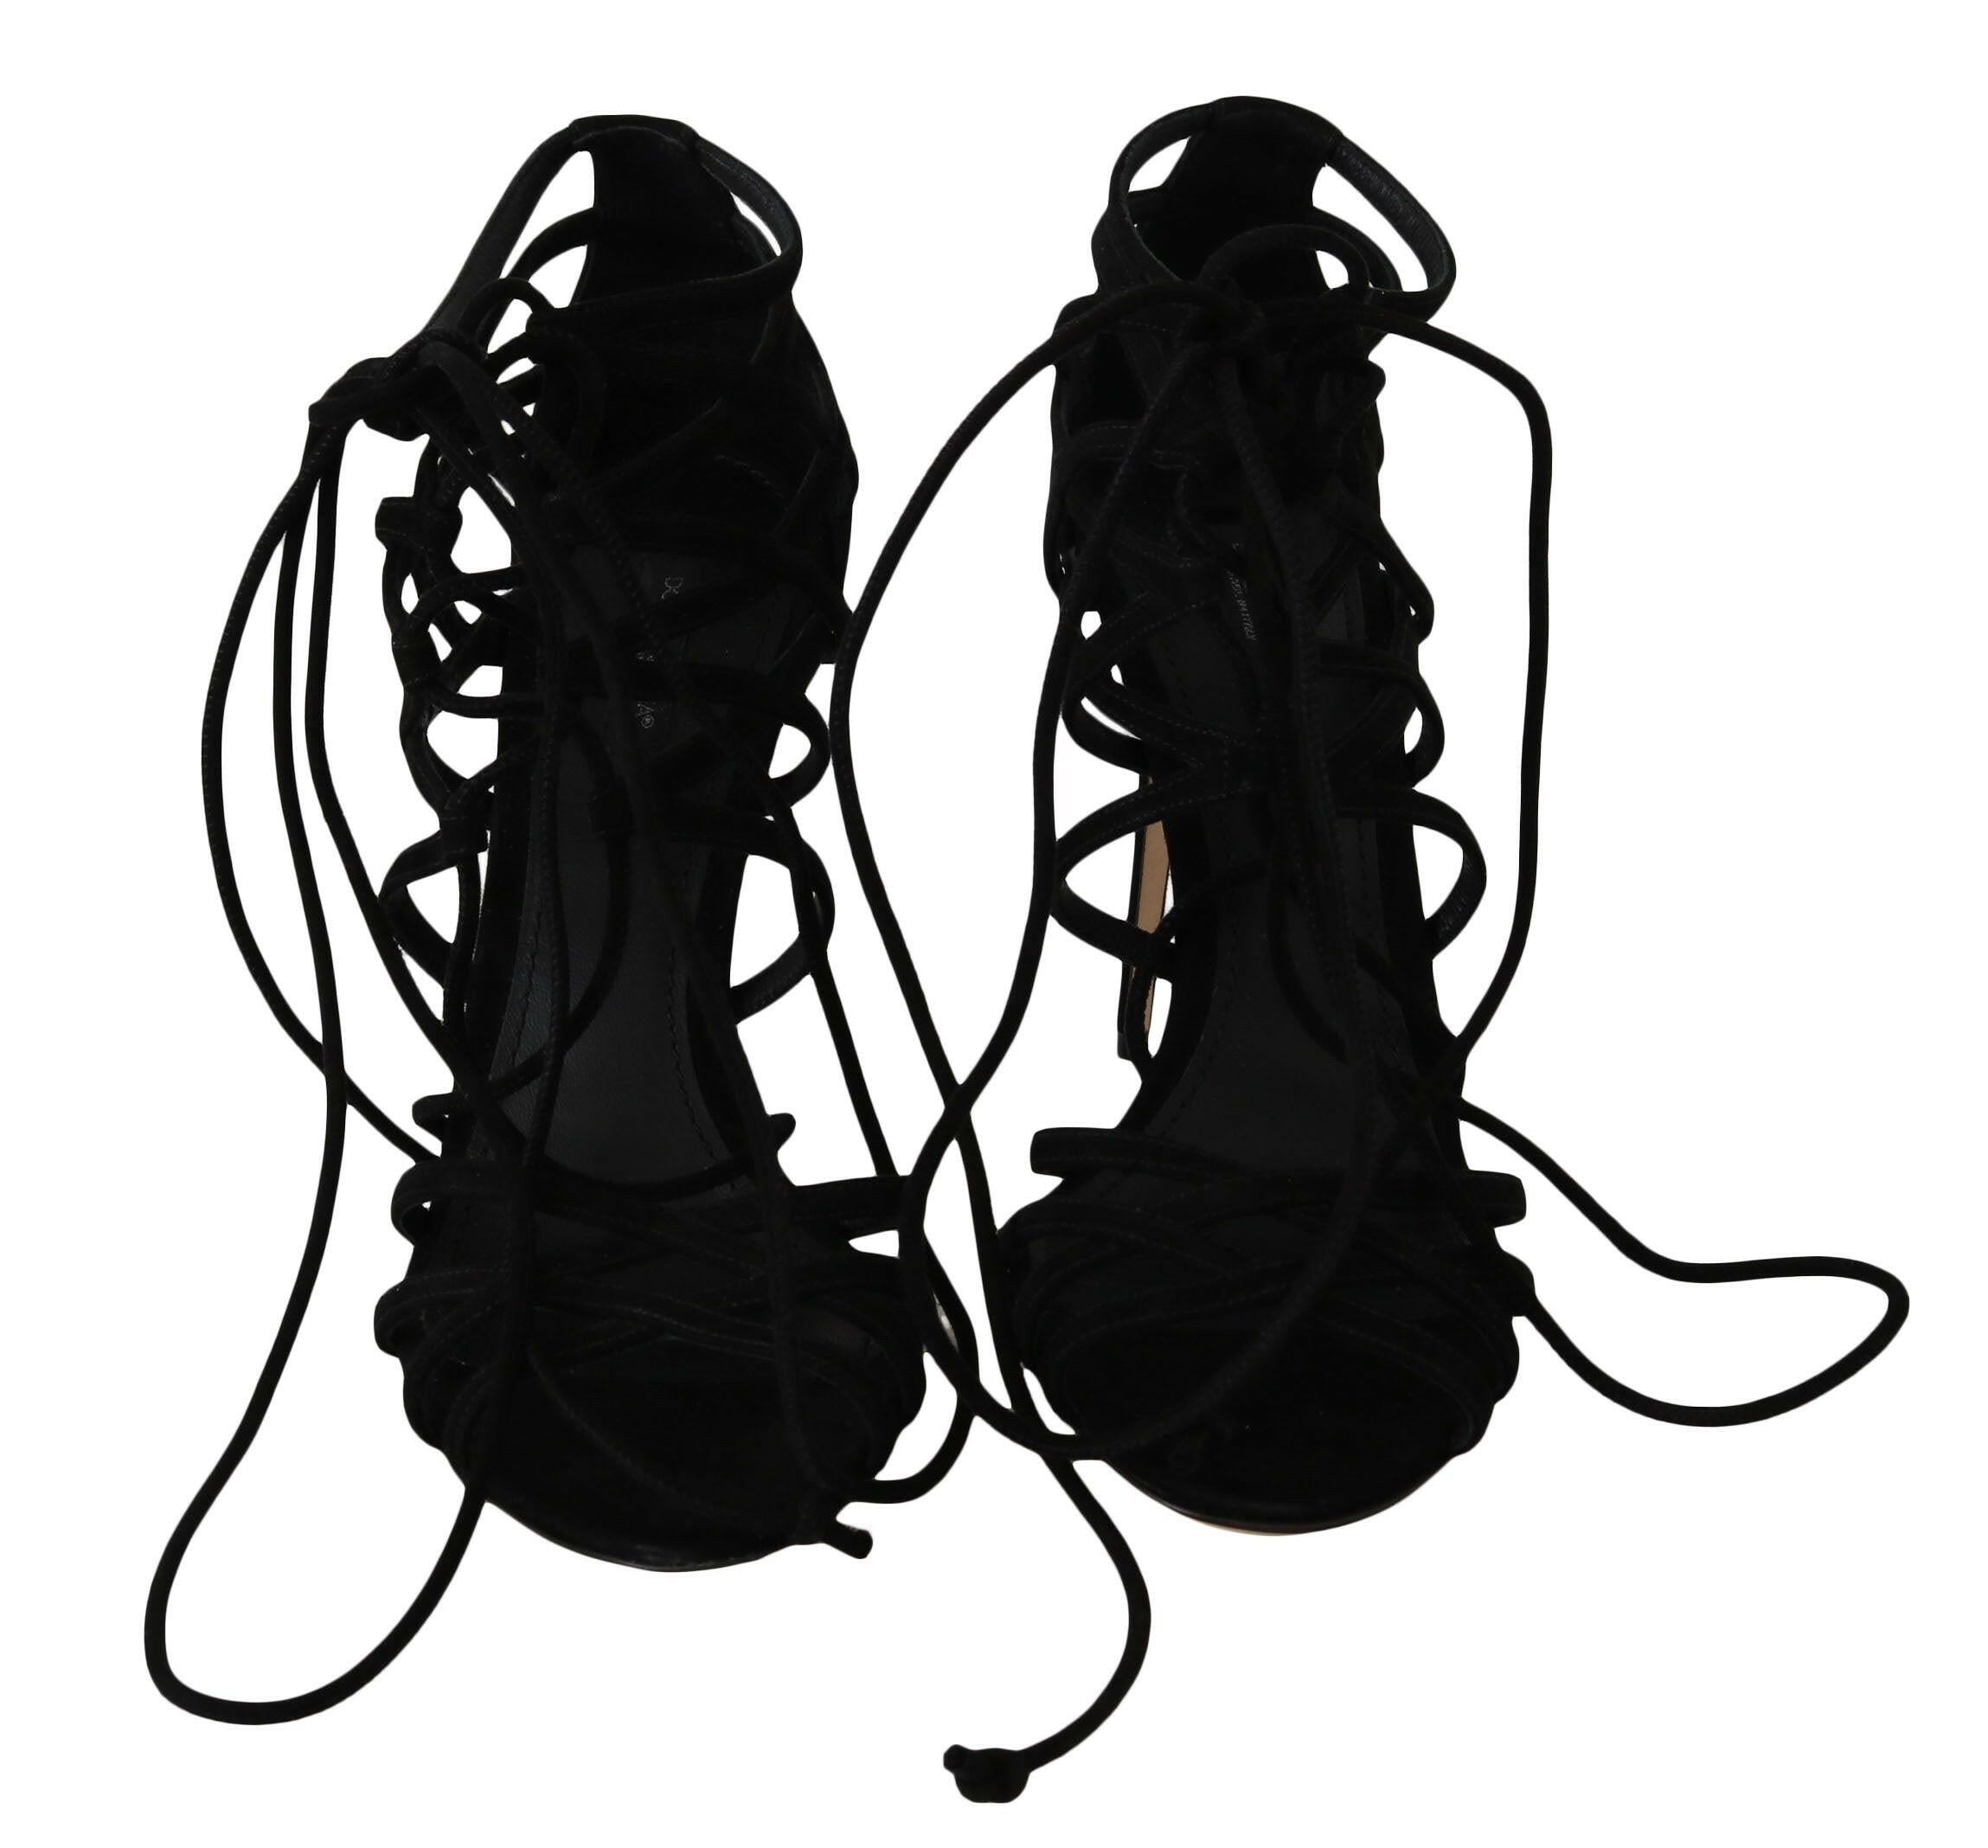 Dolce & Gabbana Black Suede Strap Stilettos Sandals - GENUINE AUTHENTIC BRAND LLC  